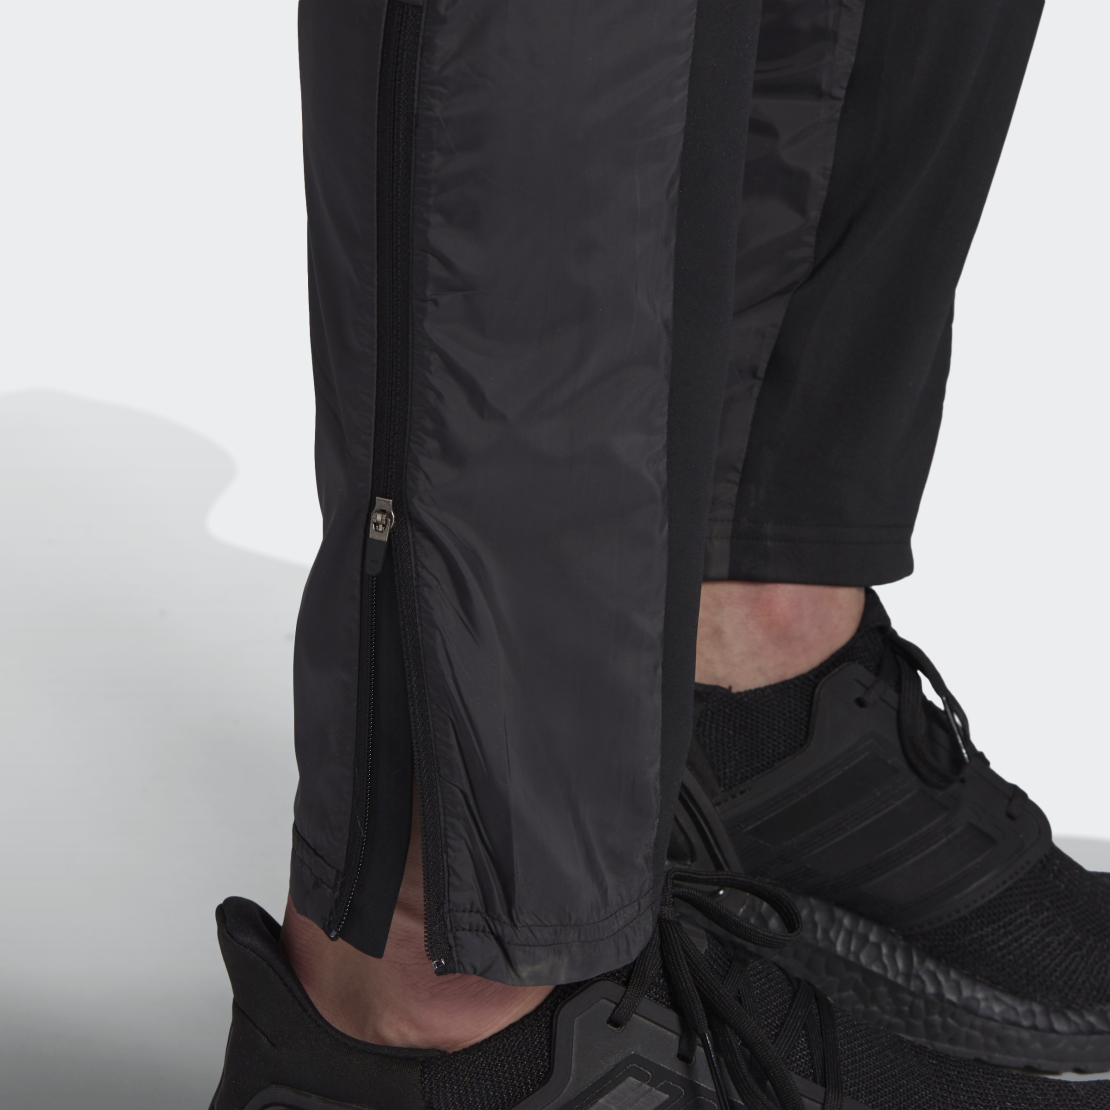 מכנס אדידס ניילון לגבר | Adidas Astro Pant Knit